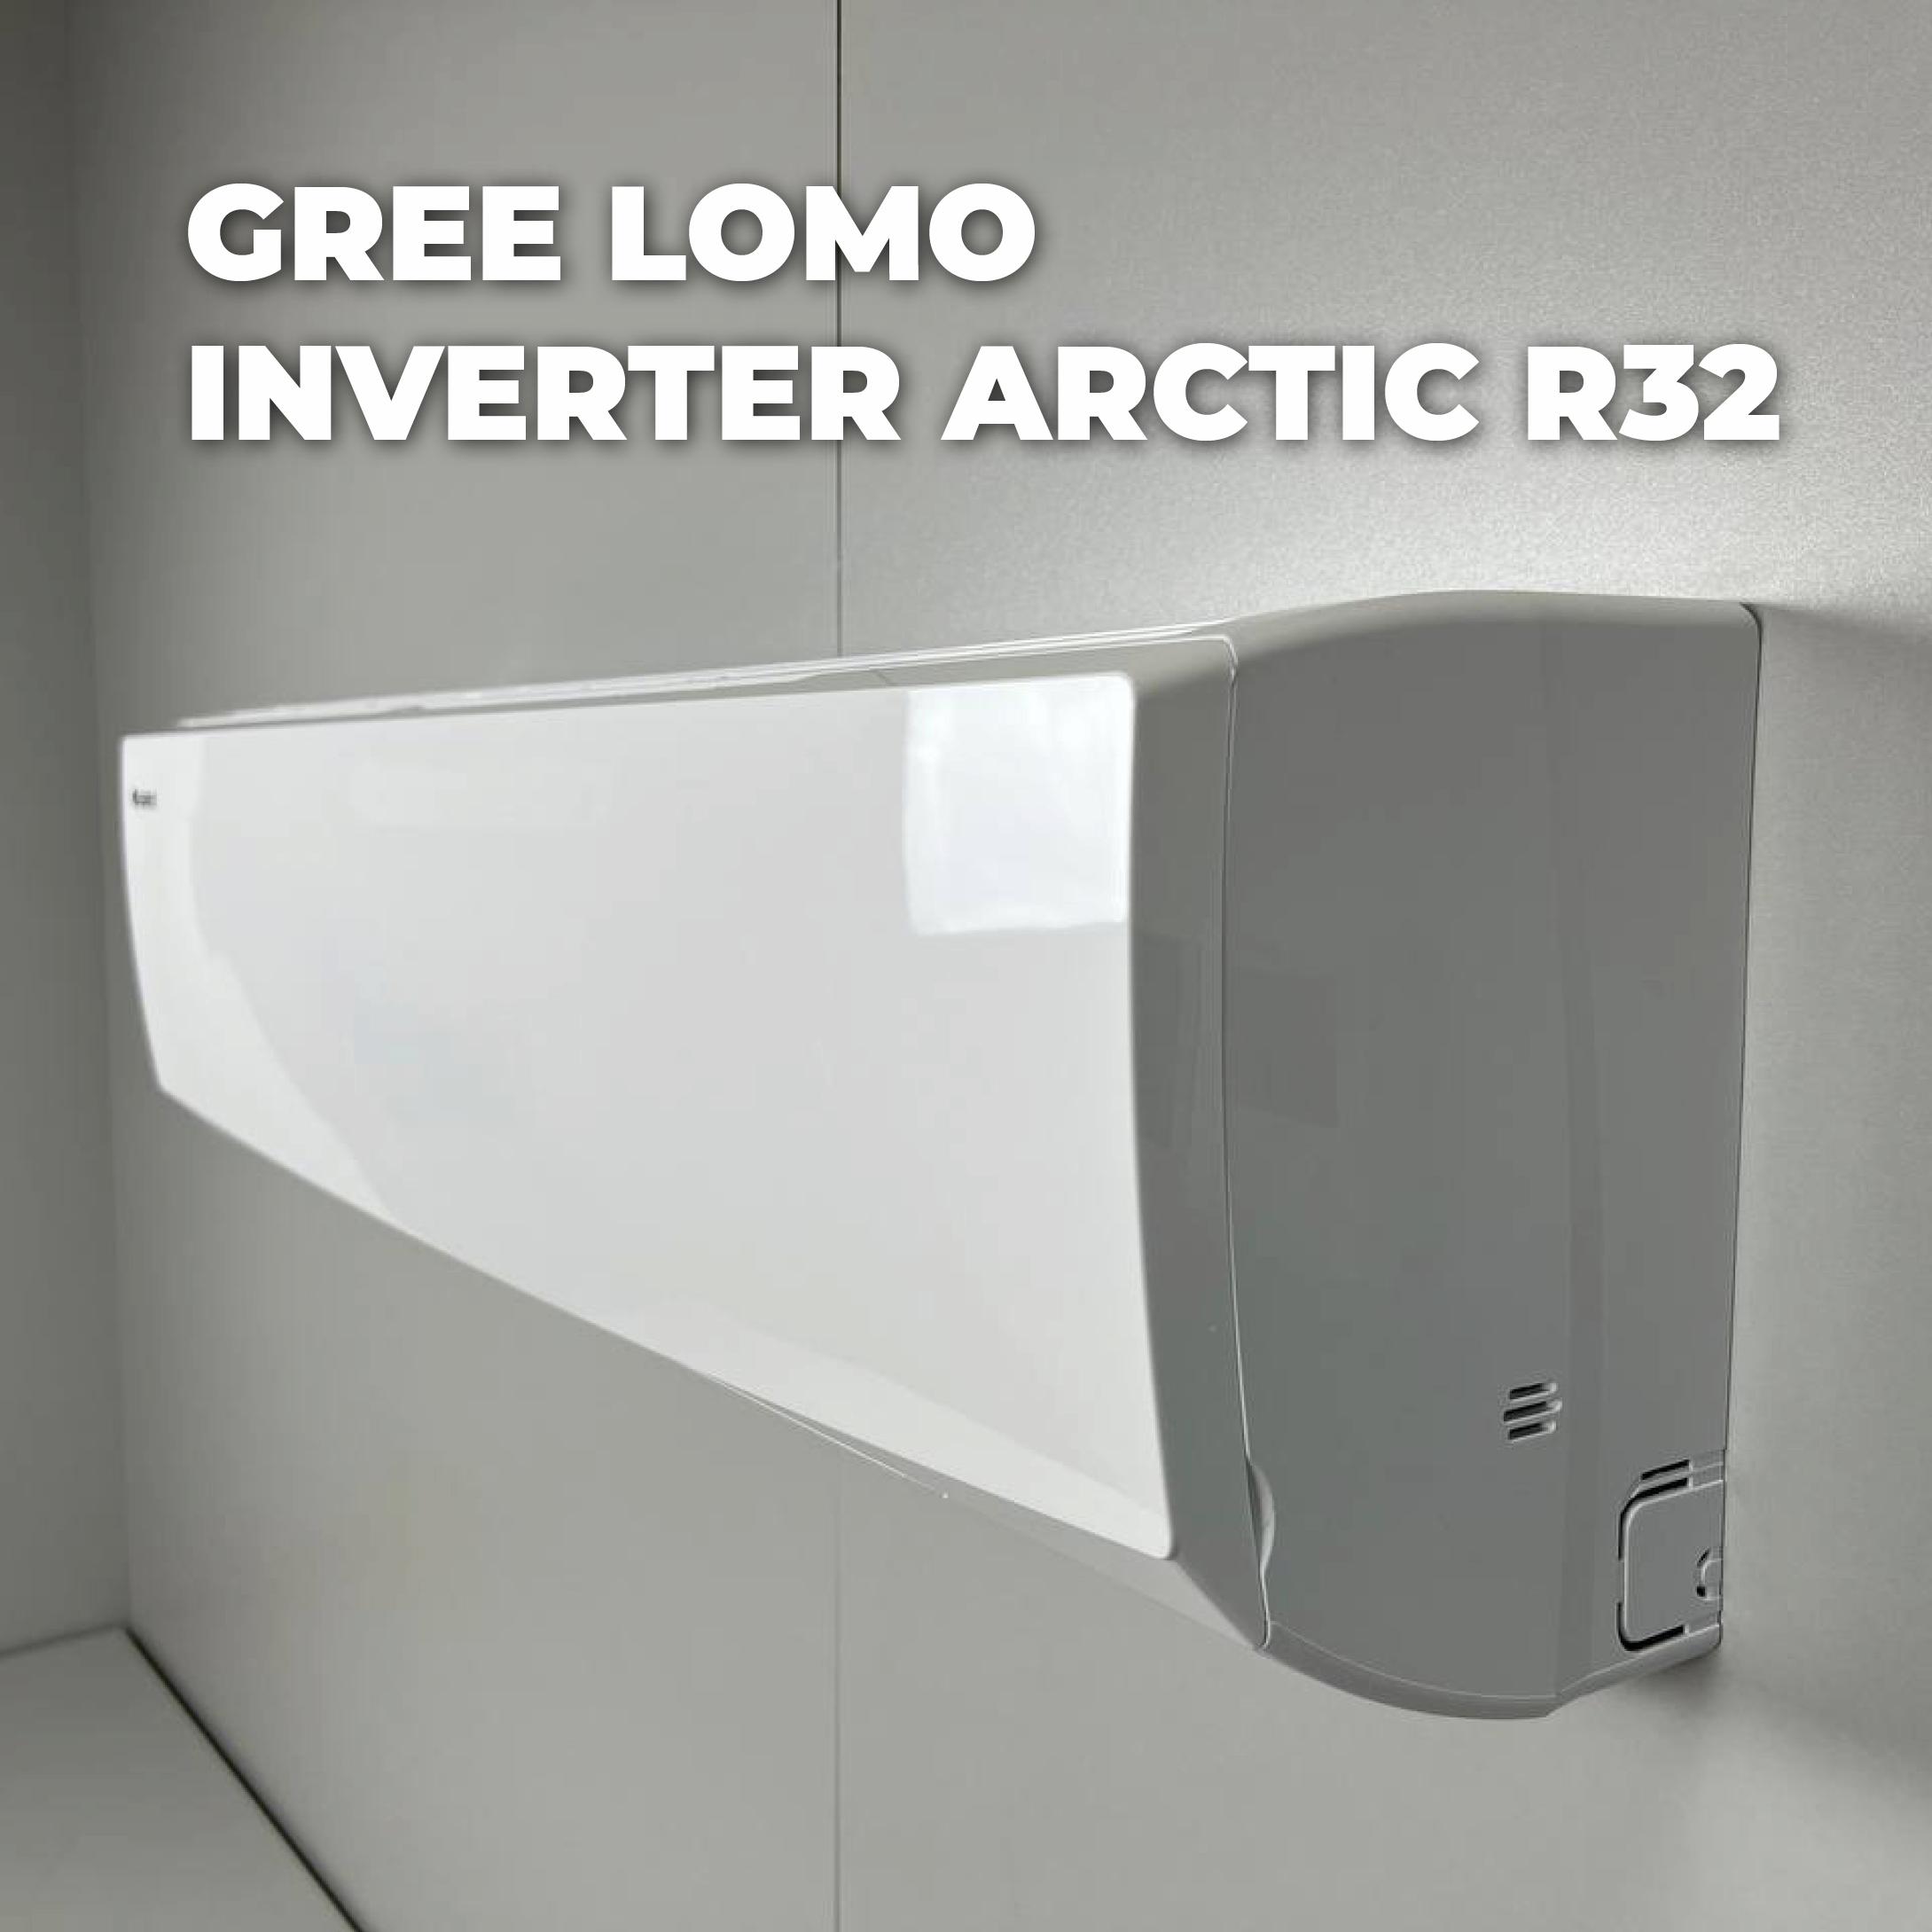 Как подключить кондиционер Gree Lomo Inverter Arctic R32 к умному дому